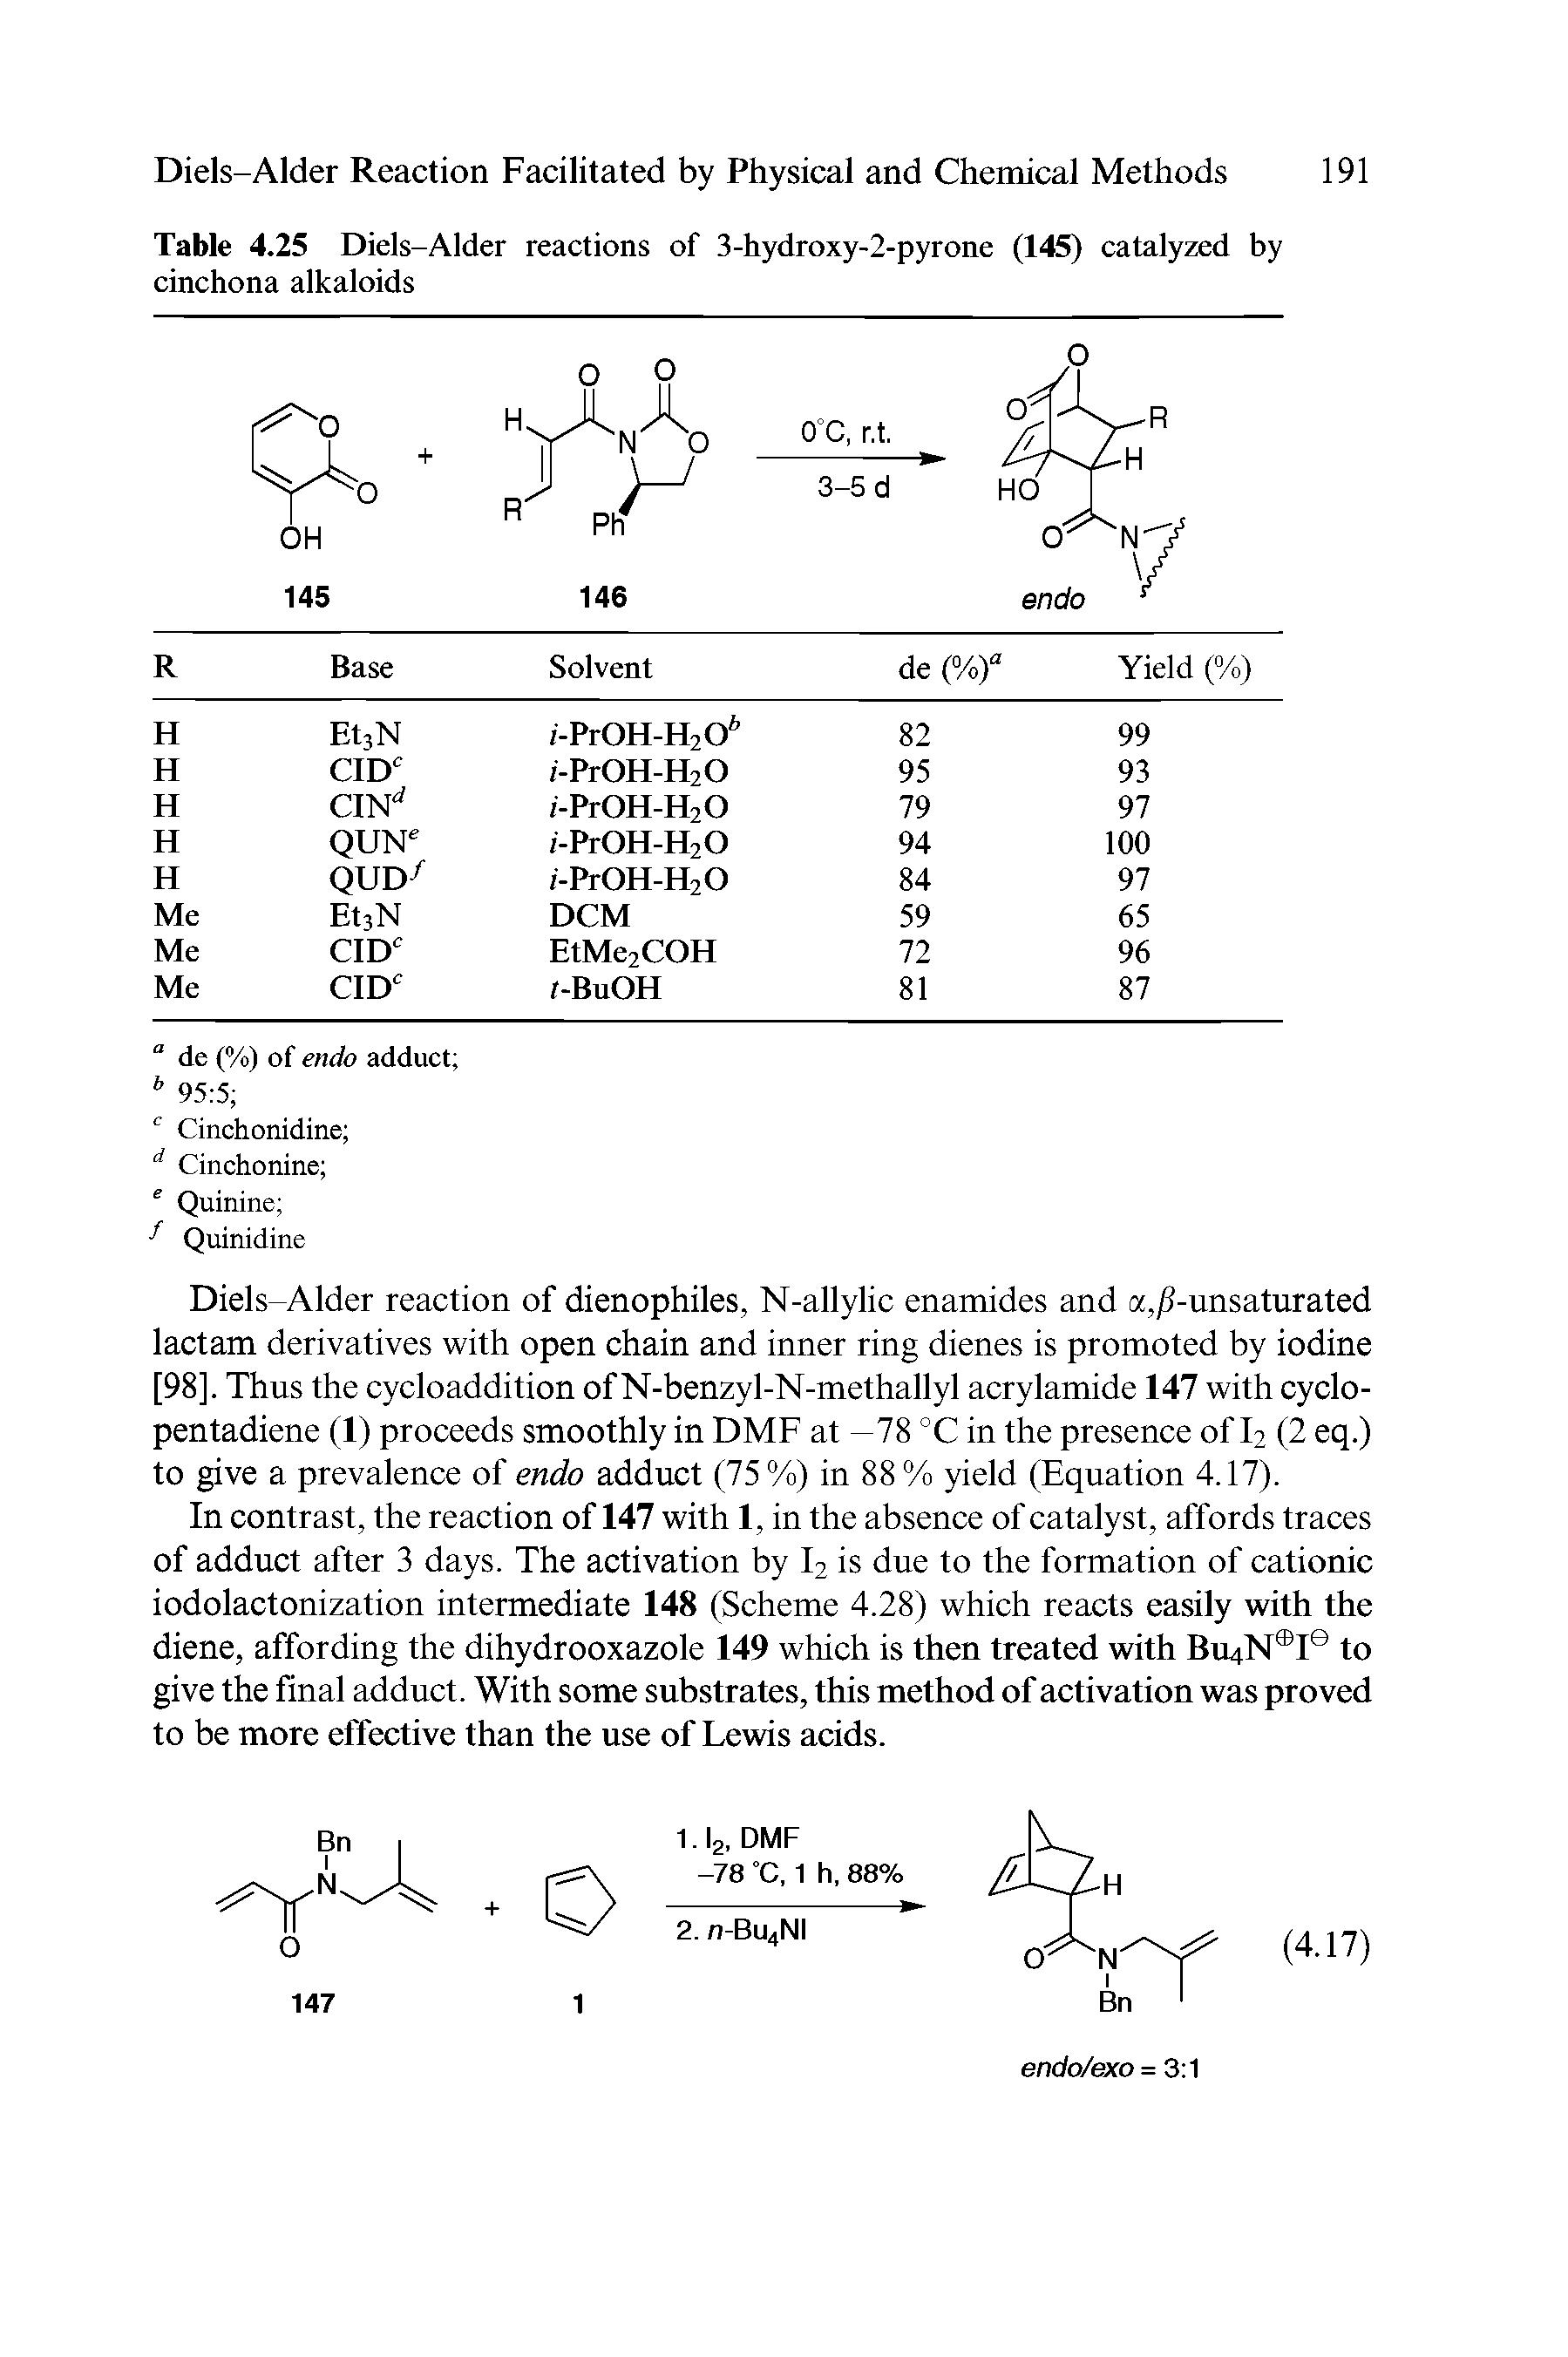 Table 4.25 Diels-Alder reactions of 3-hydroxy-2-pyrone (145) catalyzed by cinchona alkaloids...